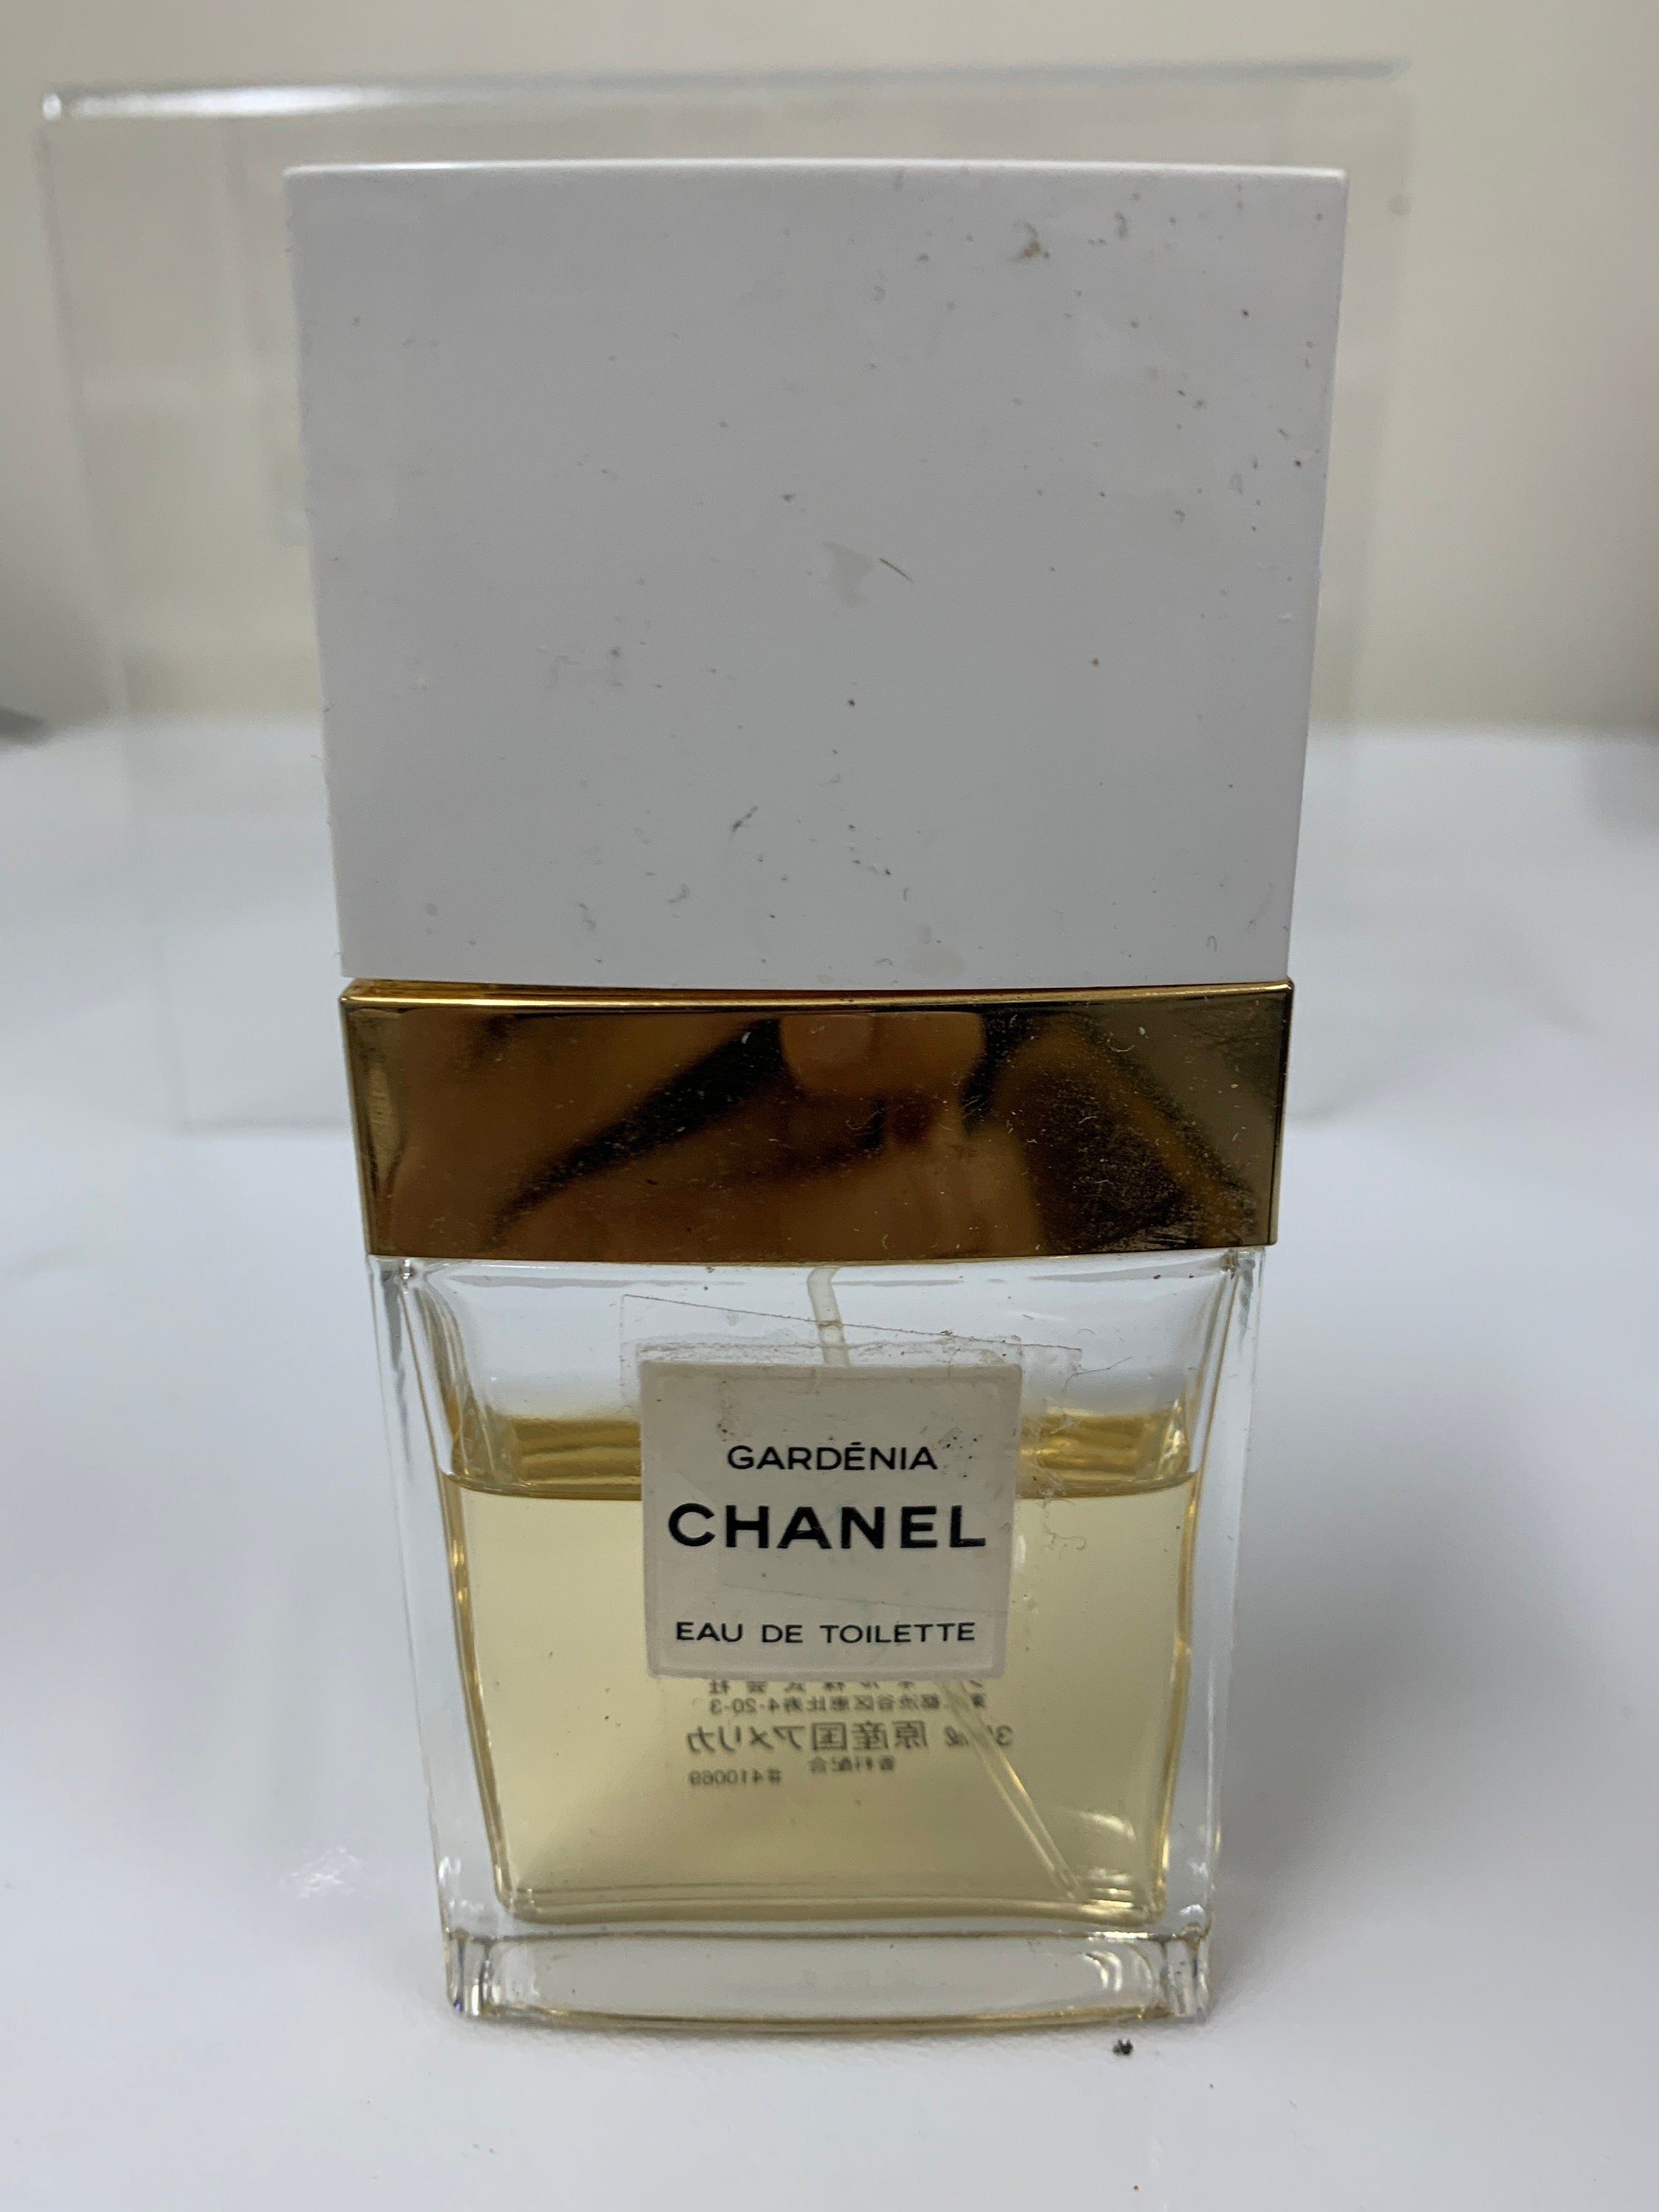 Chanel Gardenia Eau de Toilette EDT 6.8OZ 200ml Les Exclusifs Perfume  Vintage